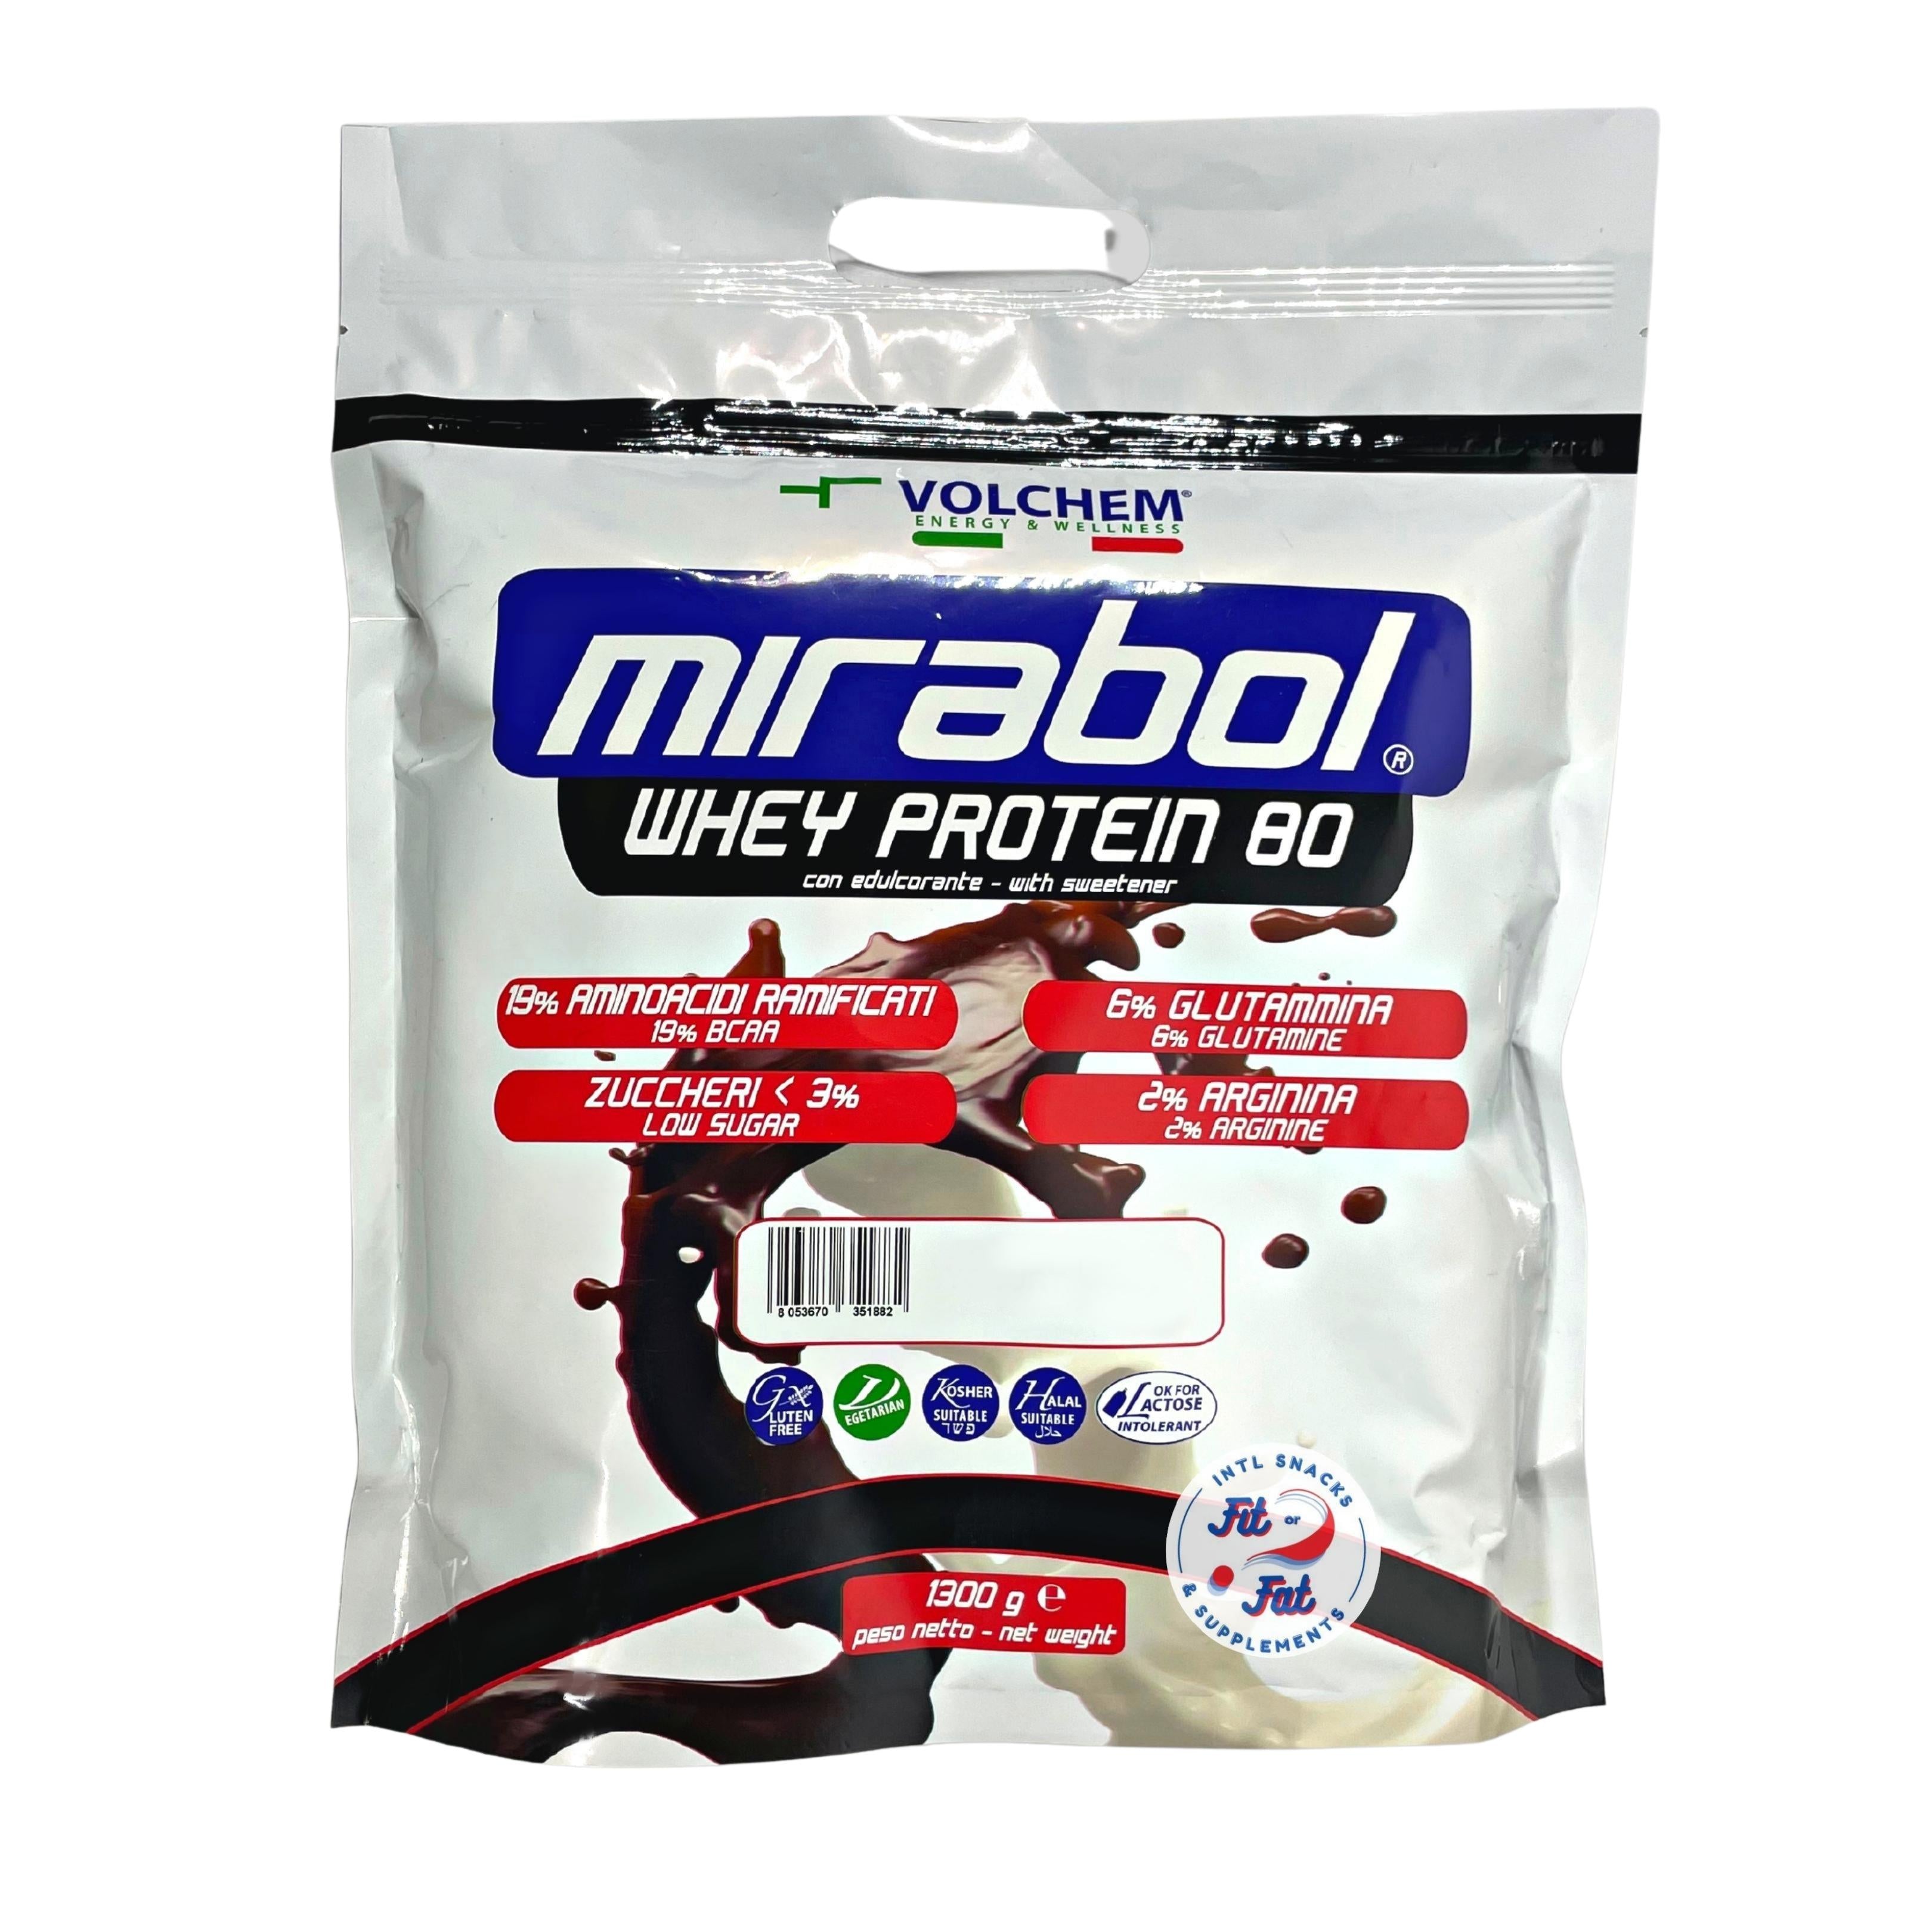 Volchem Mirabol Whey Protein 80% Yogurt 1300g